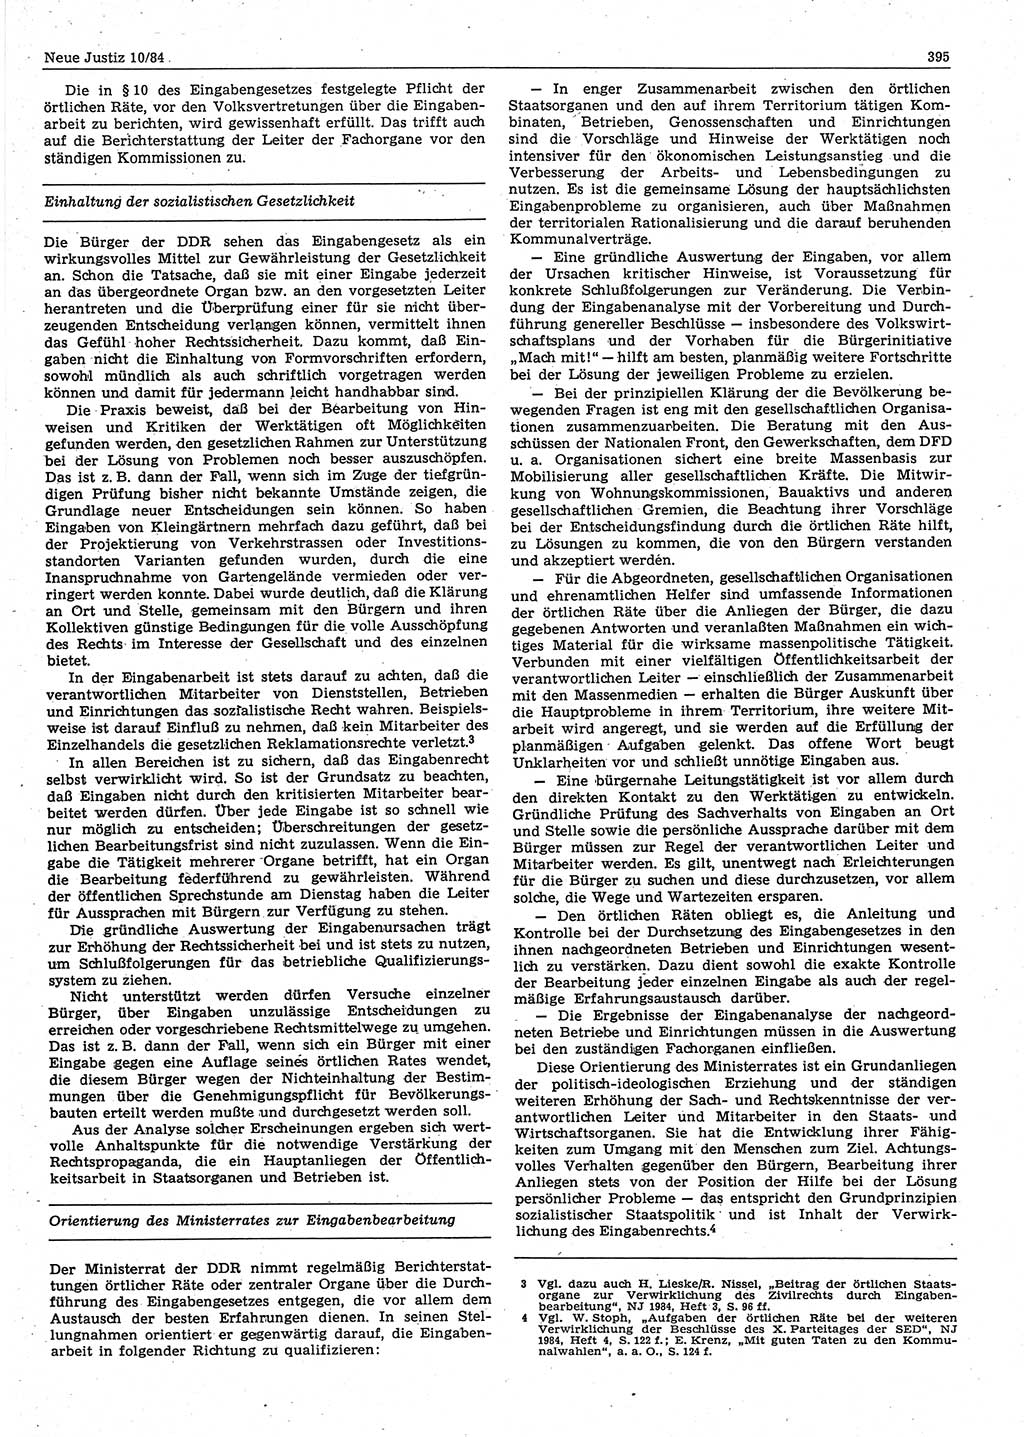 Neue Justiz (NJ), Zeitschrift für sozialistisches Recht und Gesetzlichkeit [Deutsche Demokratische Republik (DDR)], 38. Jahrgang 1984, Seite 395 (NJ DDR 1984, S. 395)